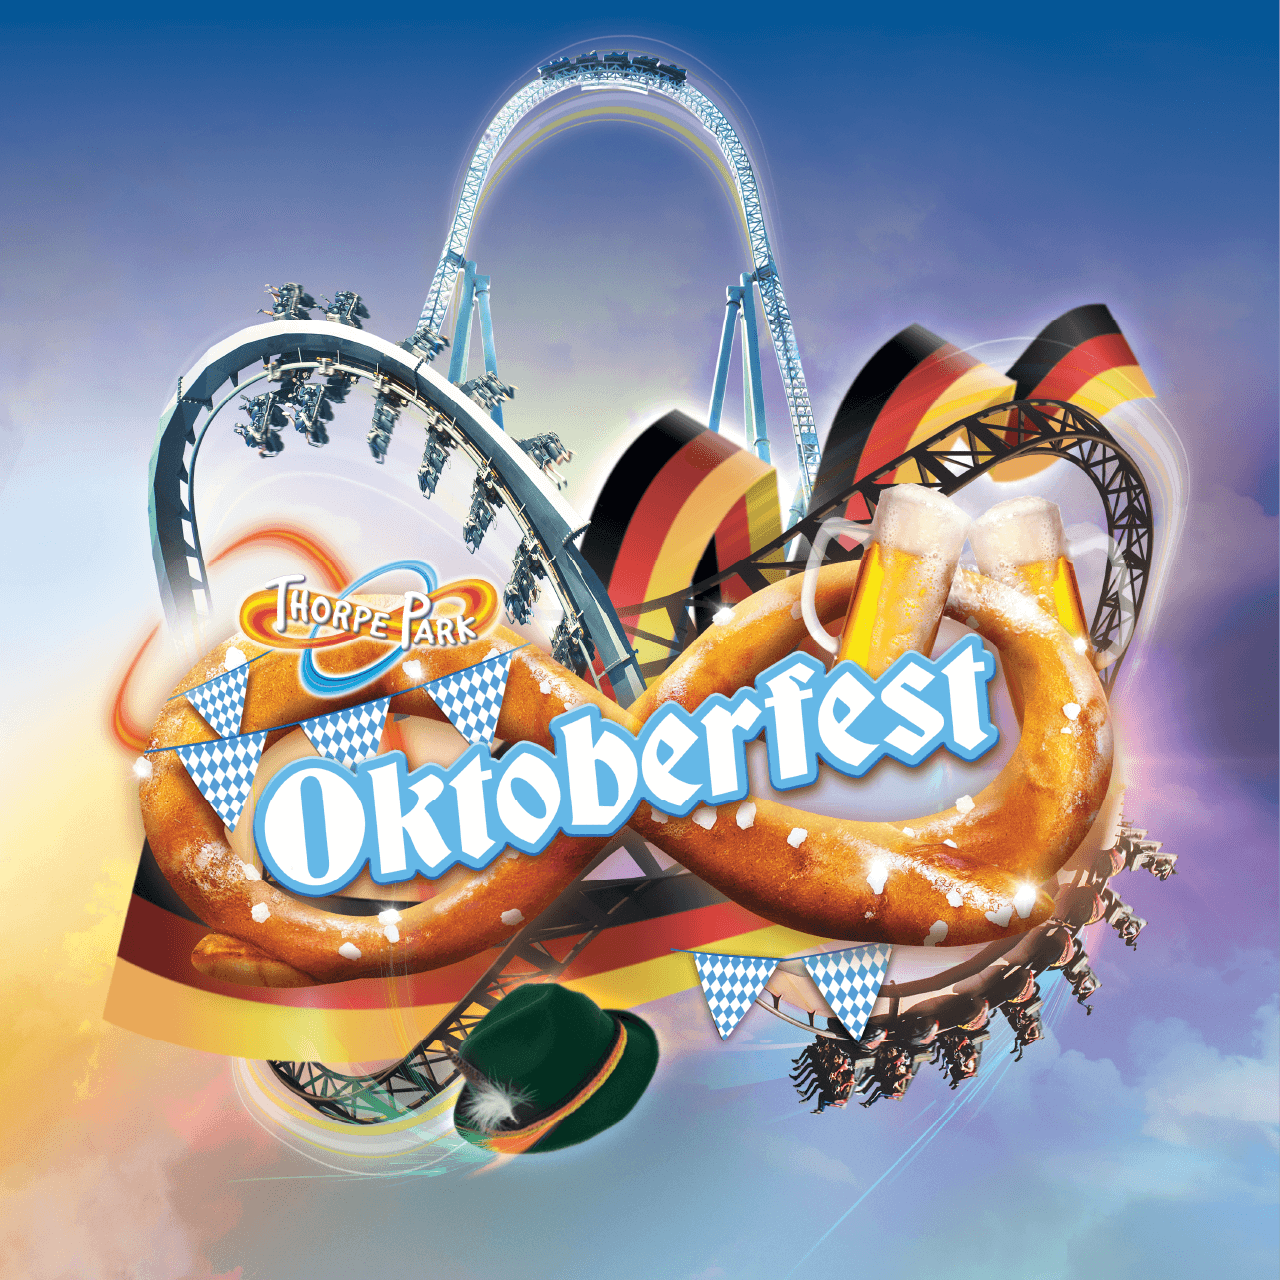 Theme Park Oktoberfest